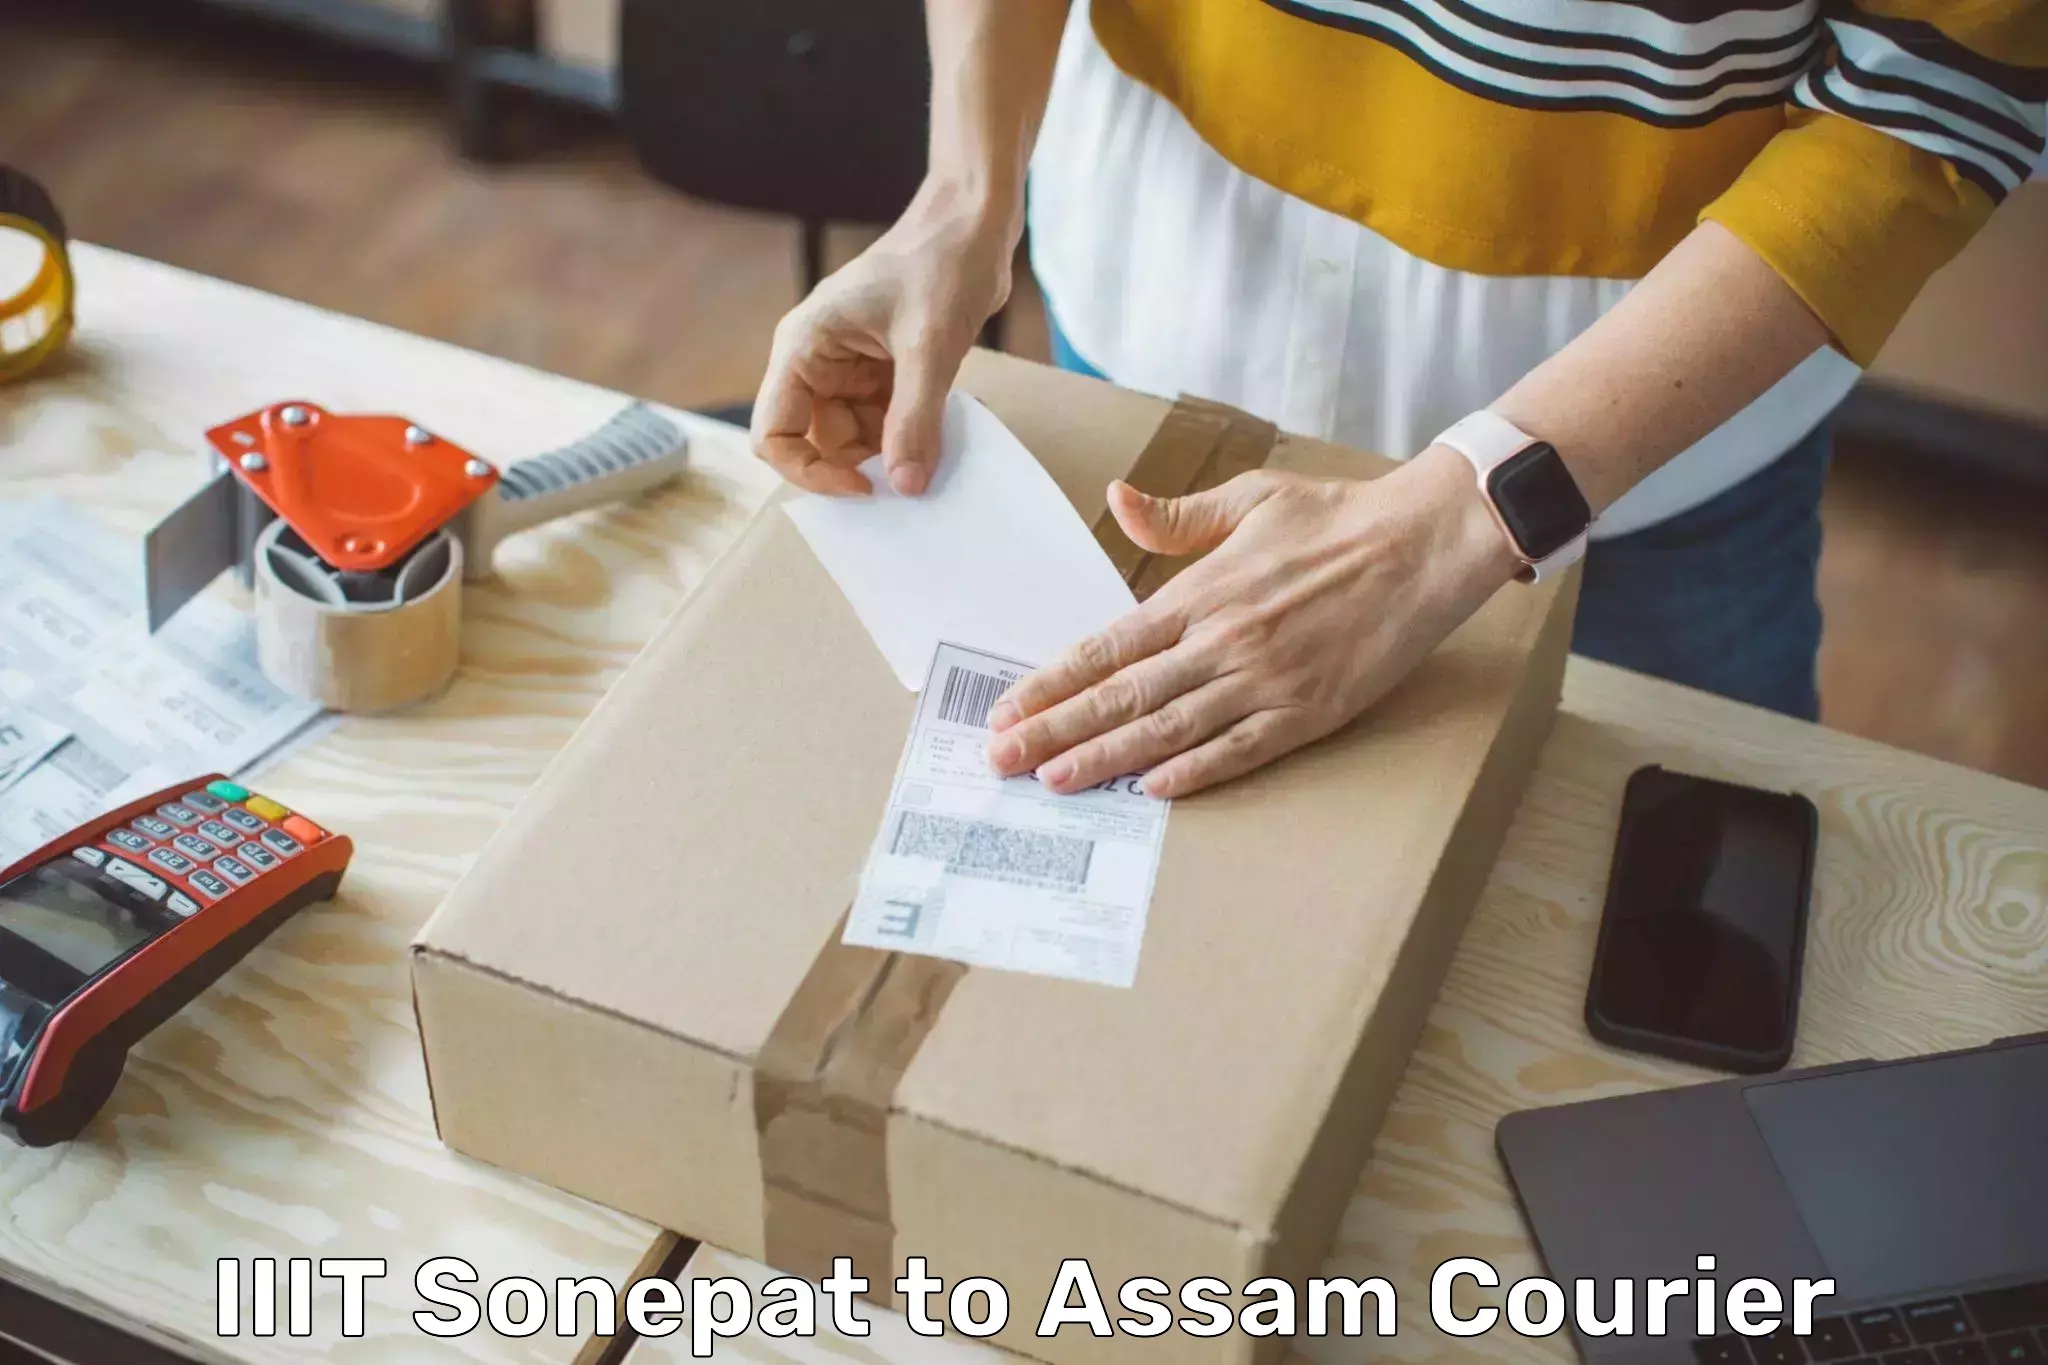 Cost-effective courier solutions IIIT Sonepat to Chapar